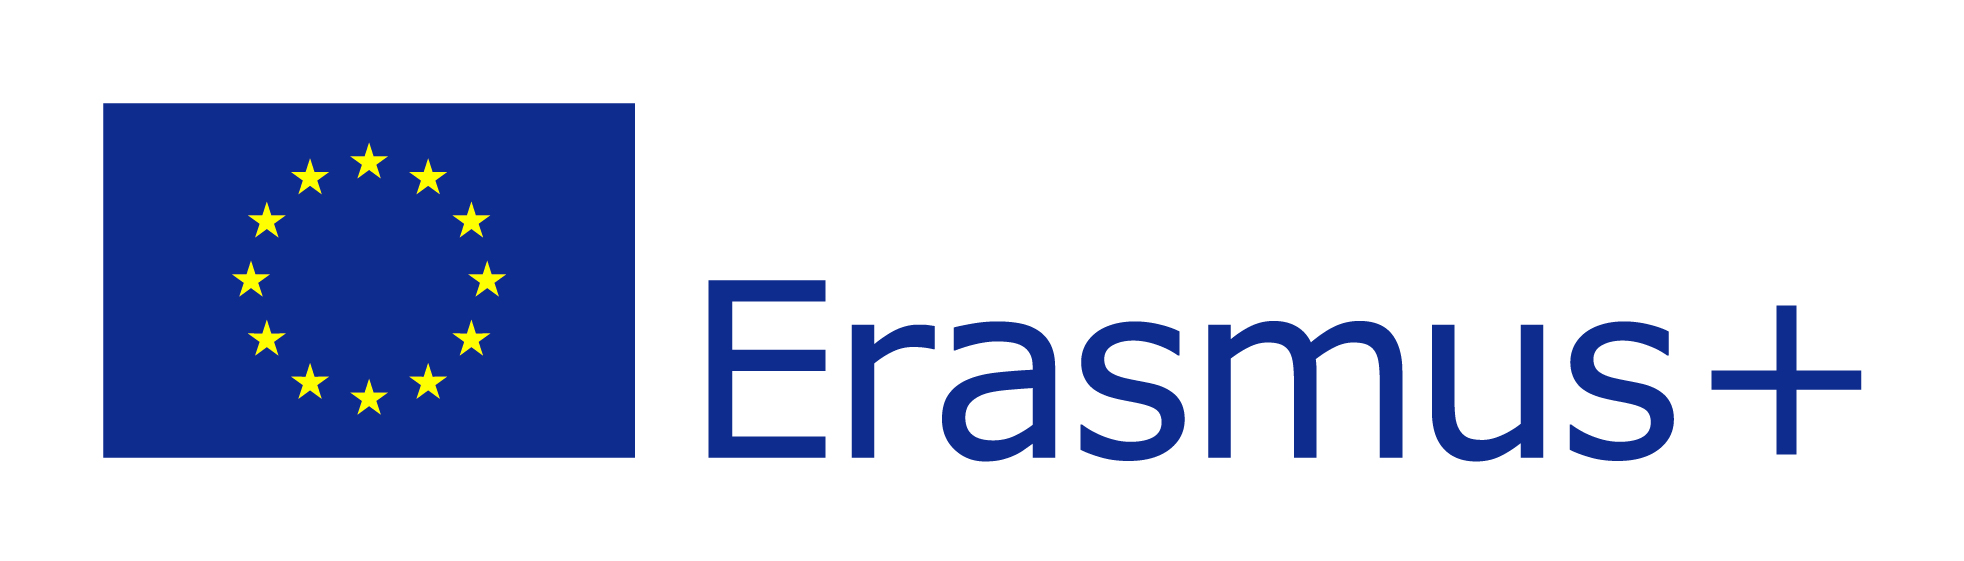 Logo programu Erasmus+ wraz z emblematem Unii Europejskiej